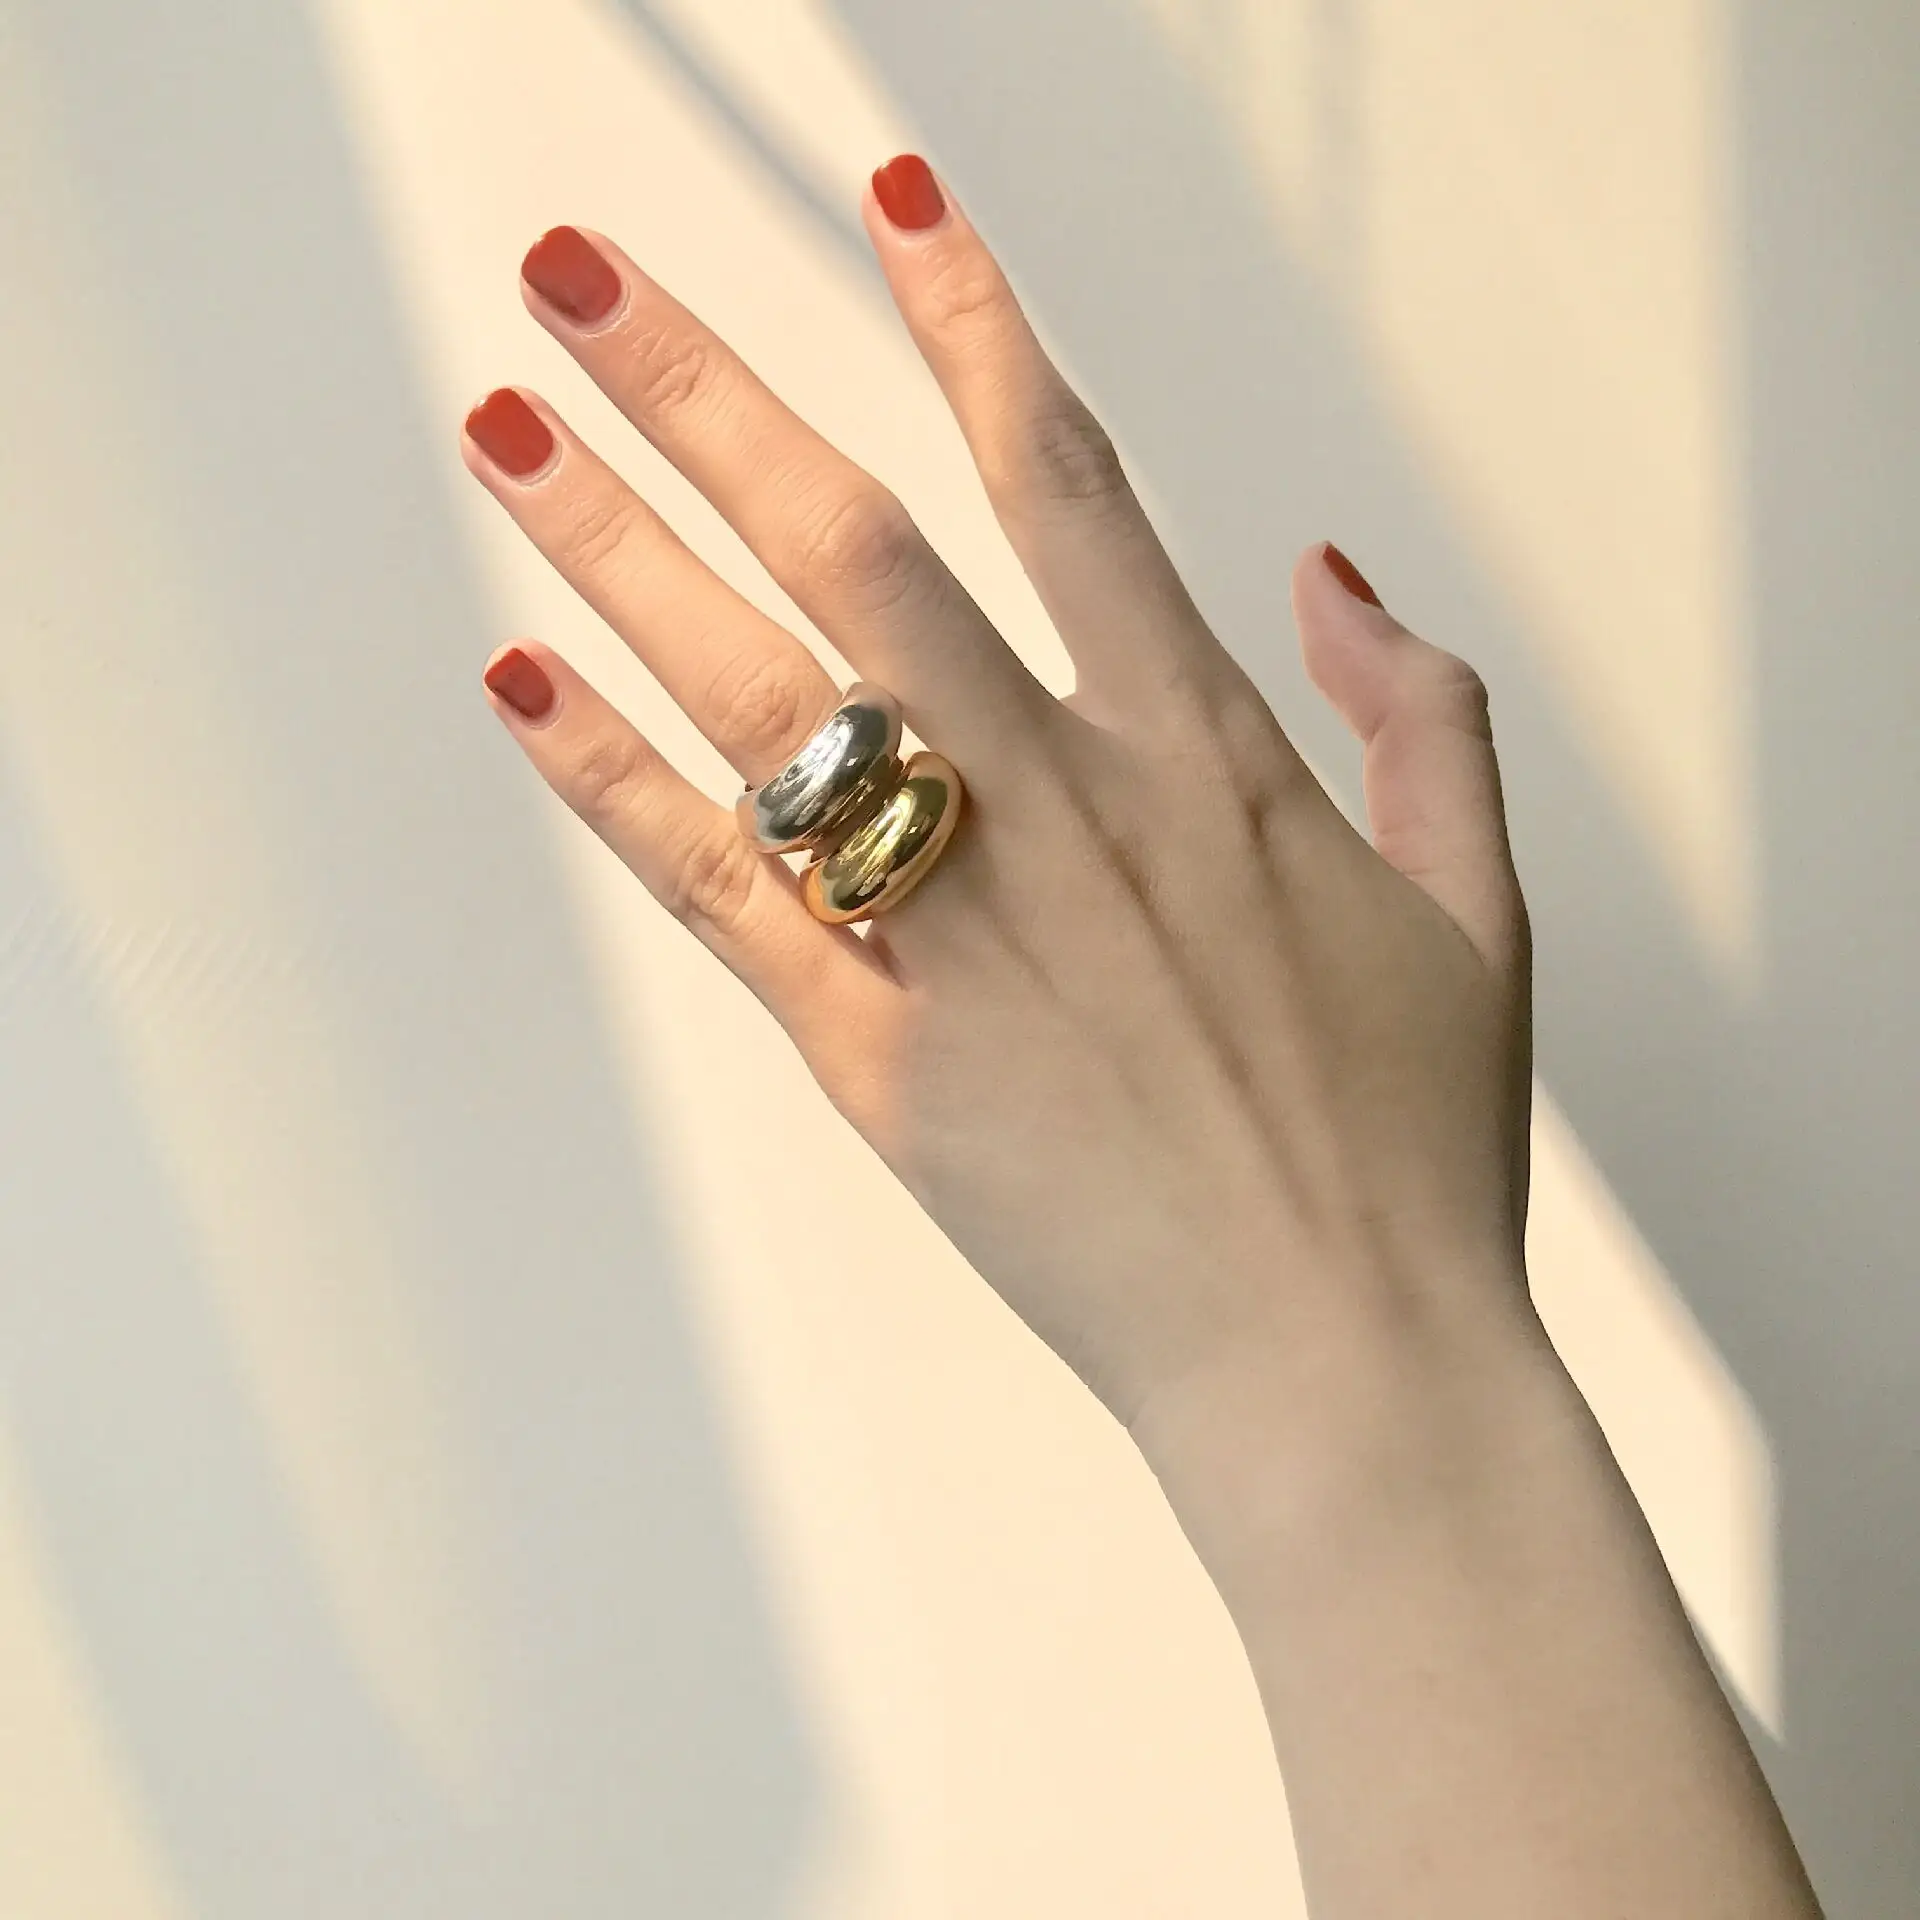 Dainty แหวนทองเหลืองสำหรับผู้หญิง,แหวนเงินหนาไม่เท่ากันแบรนด์ดังจากฝรั่งเศส